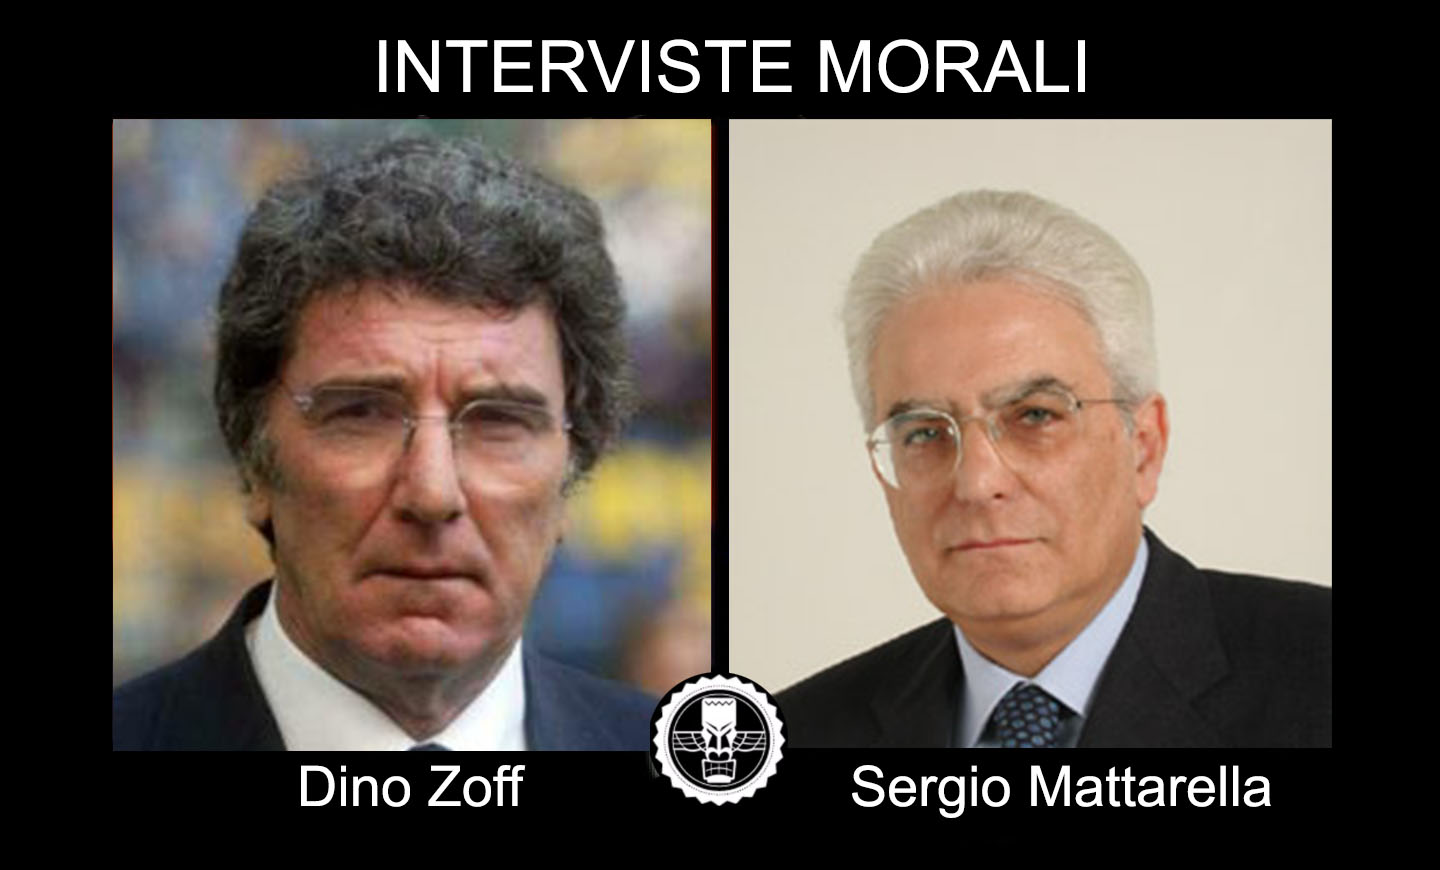 Interviste Morali /1. Dino Zoff intervista Sergio Mattarella.